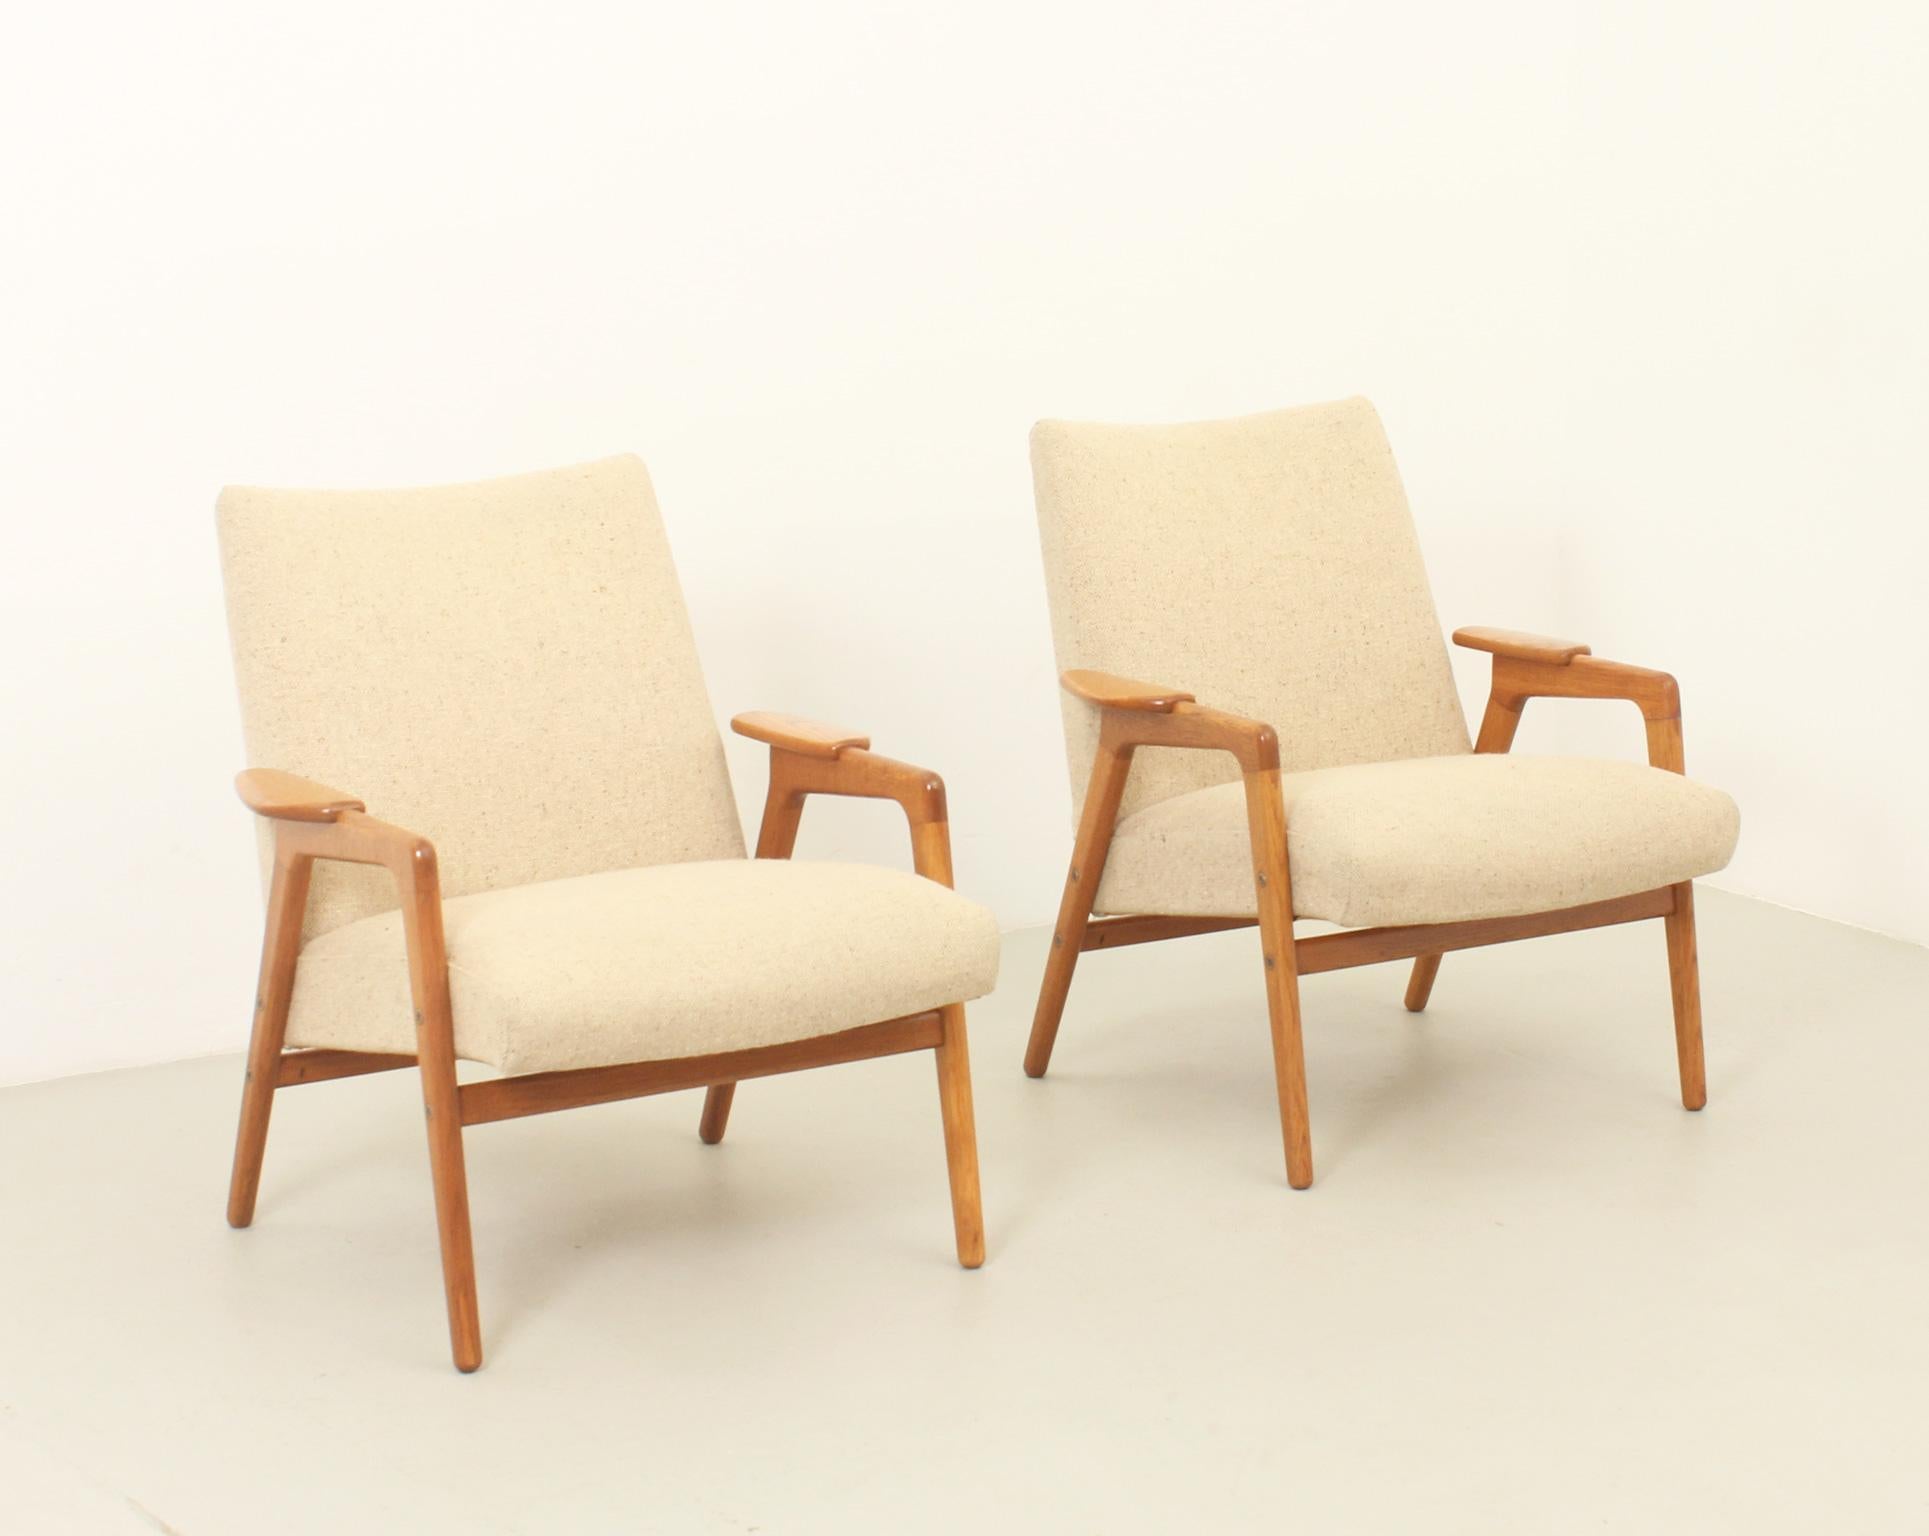 Paire de fauteuils Ruster conçus par le designer suédois Yngve Ekström et produits par la société néerlandaise Pastoe aux Pays-Bas, années 1960. Structure en bois de chêne massif et tapisserie d'origine en tissu de laine. 